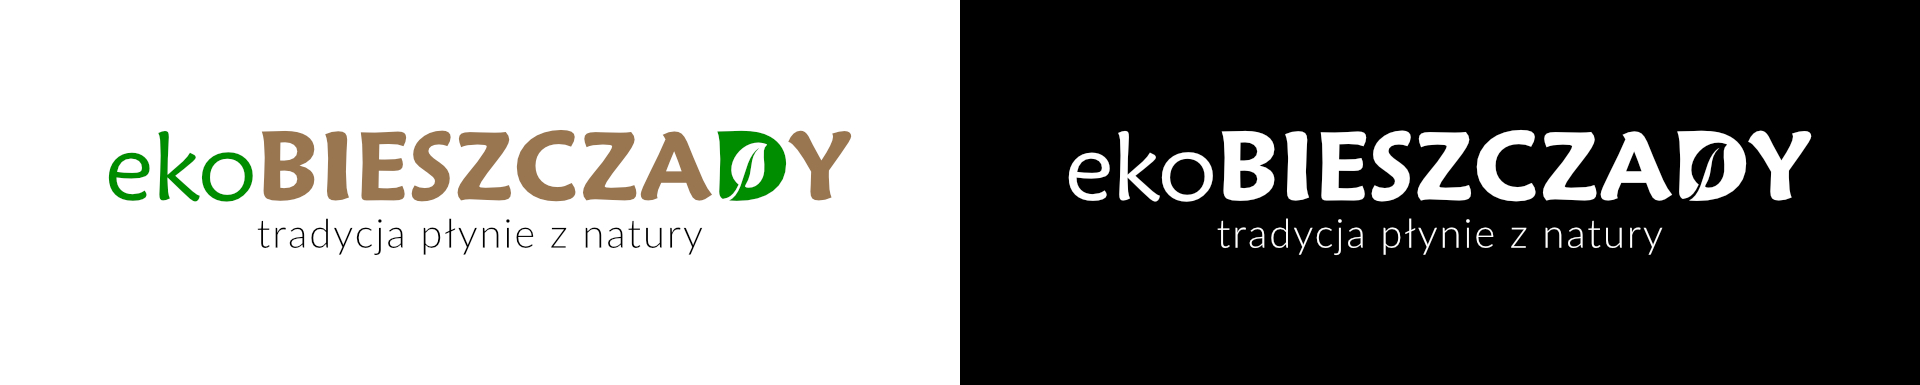 ekobieszczady logo